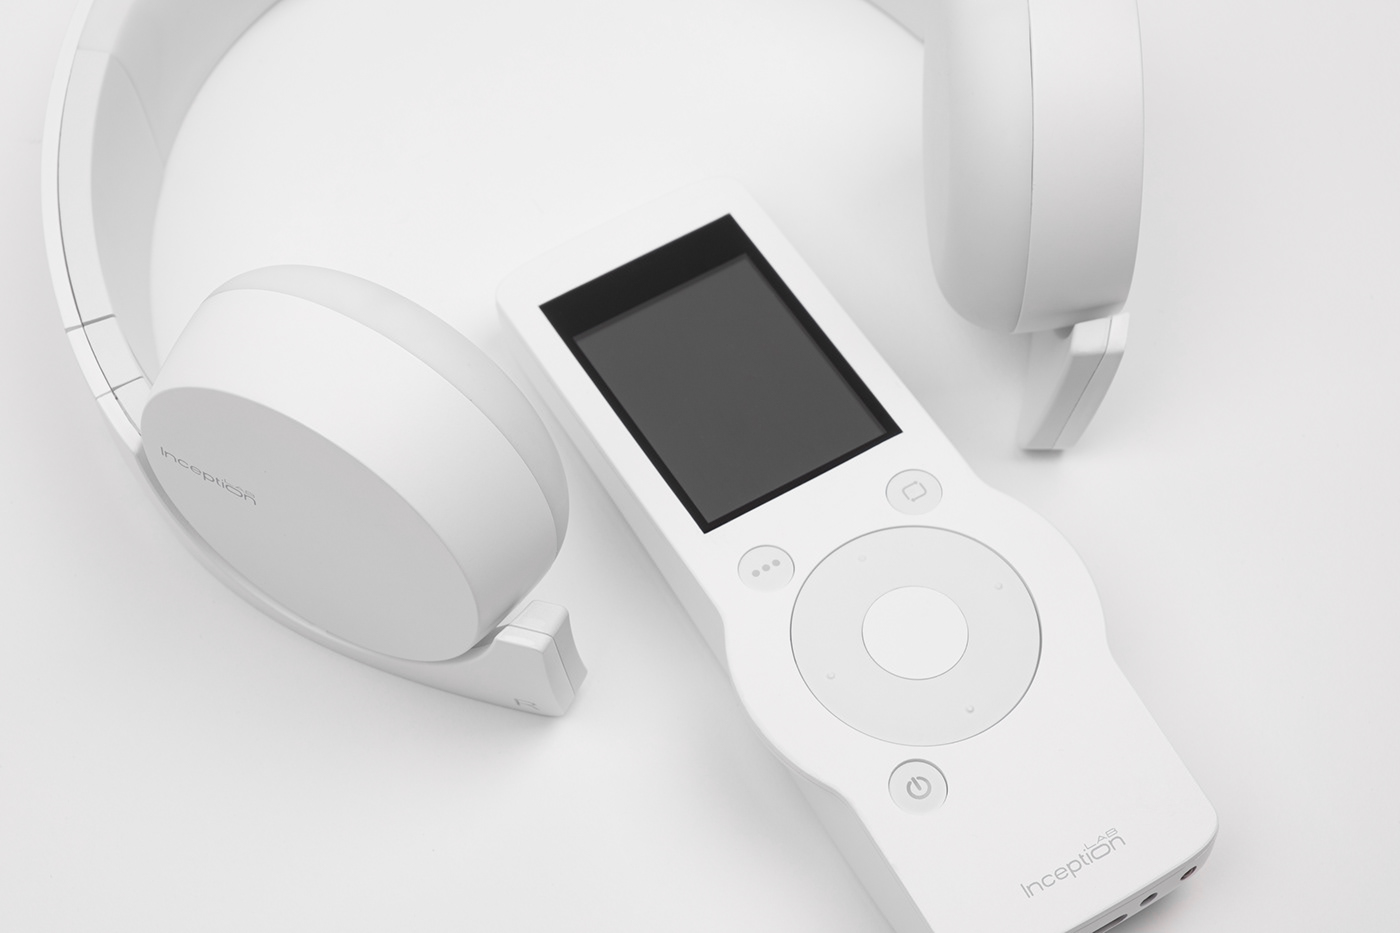 design product design  product medical headphones industrial design  secondwhite industrial future